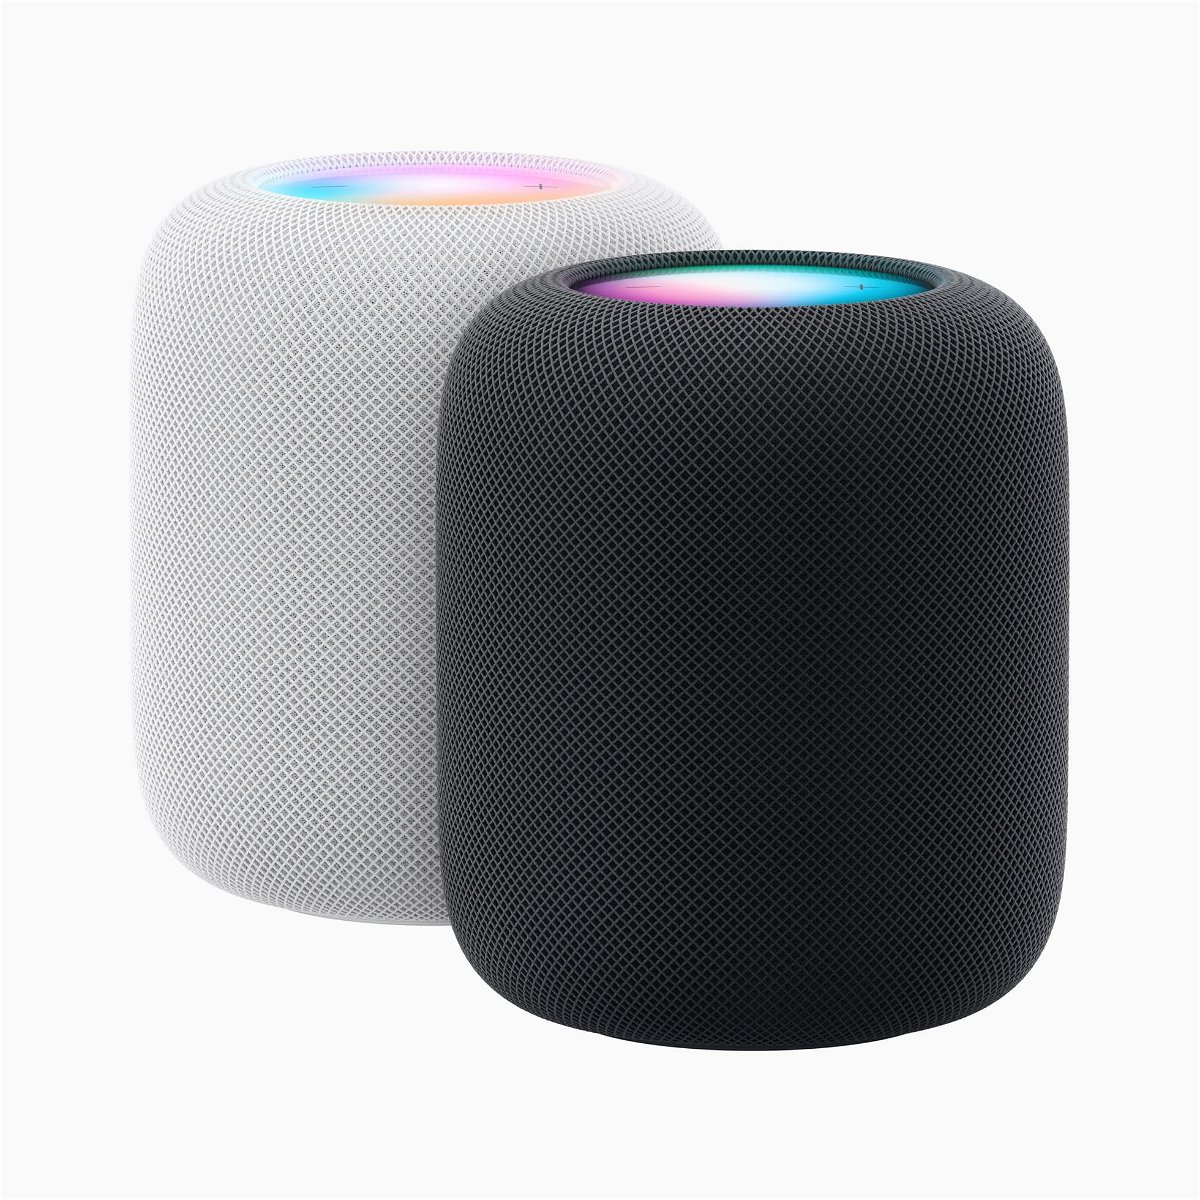 Der HomePod ist vollgepackt mit Innovationen von Apple, der Intelligenz von Siri und Smart Home Funktionen und sorgt für ein unglaubliches Hörerlebnis